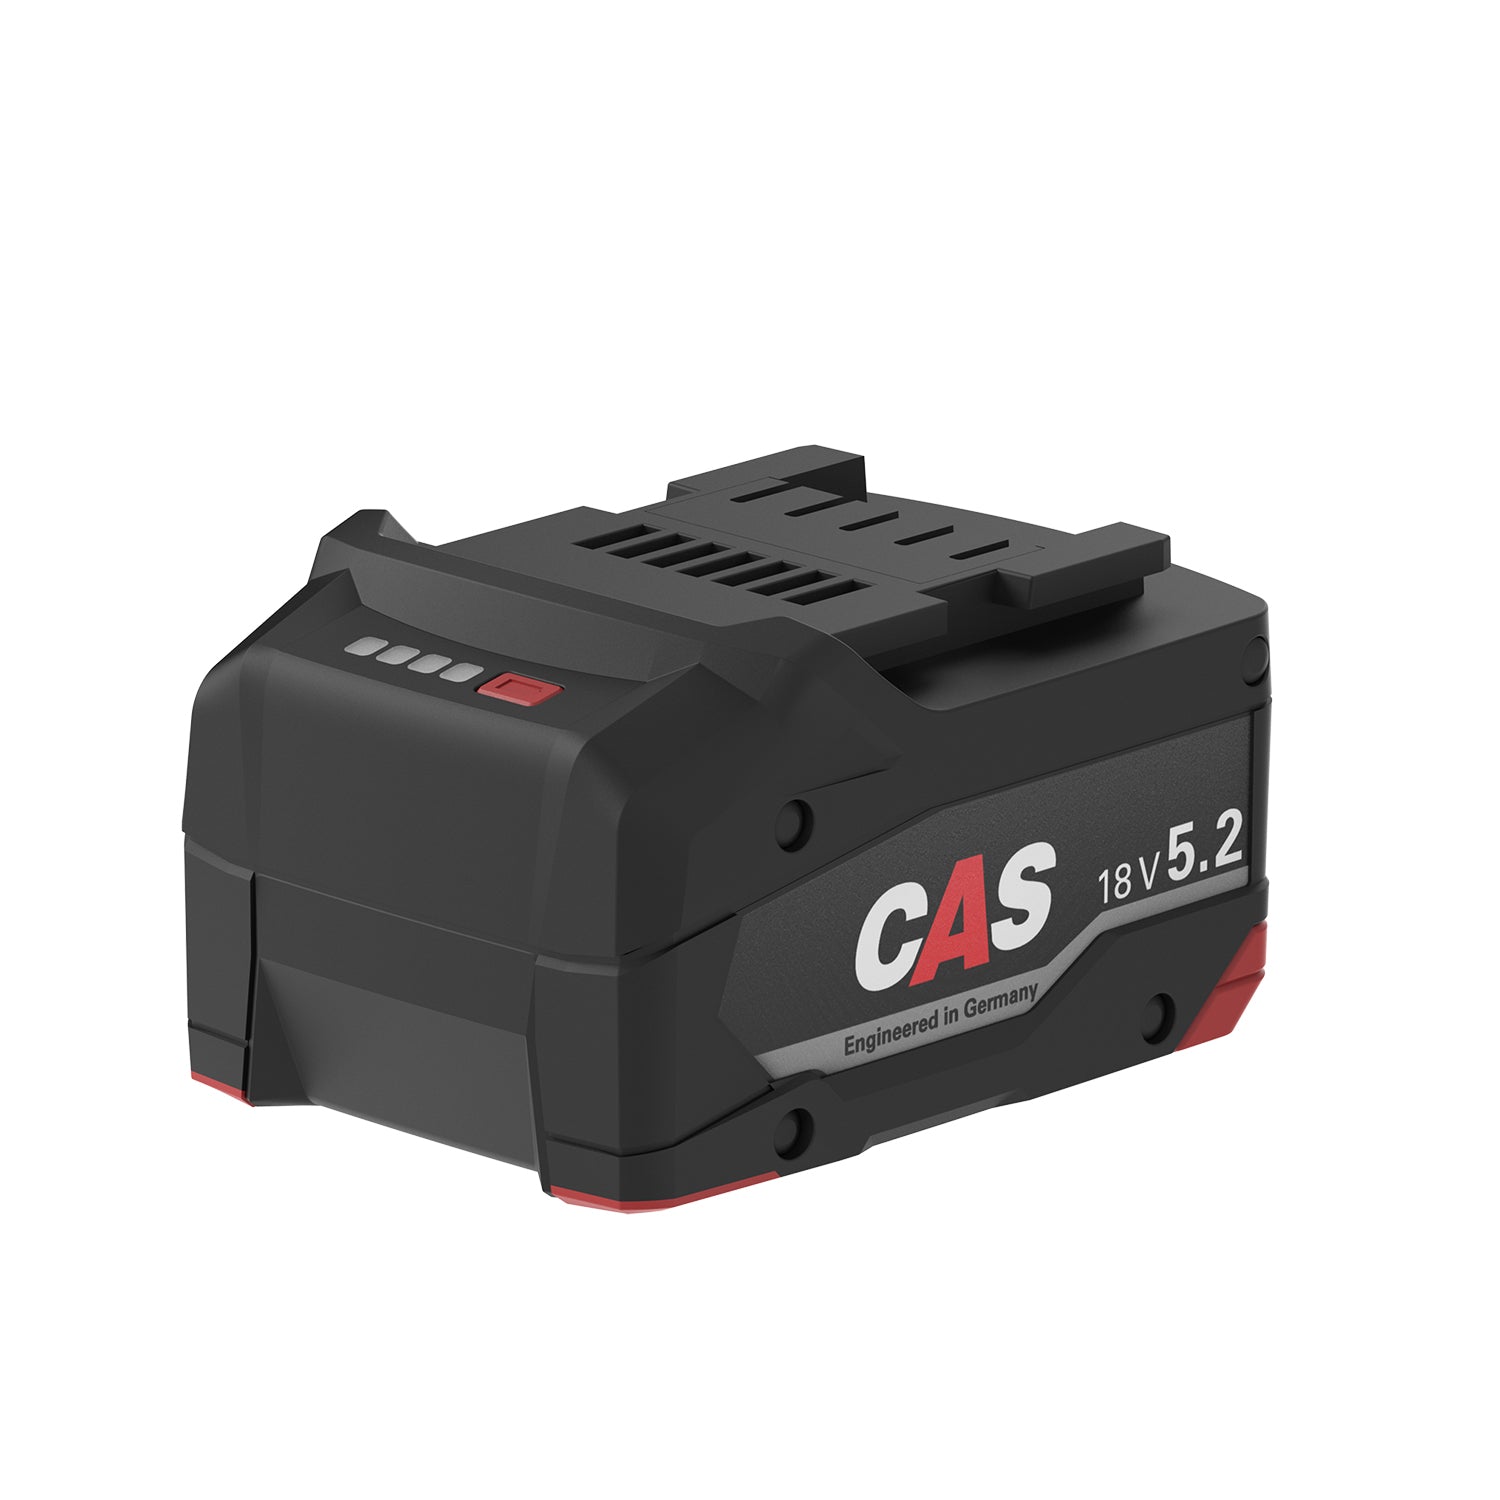 Batería Scangrip CAS 18 V Li-Power 5,2 Ah para luces de trabajo Connect